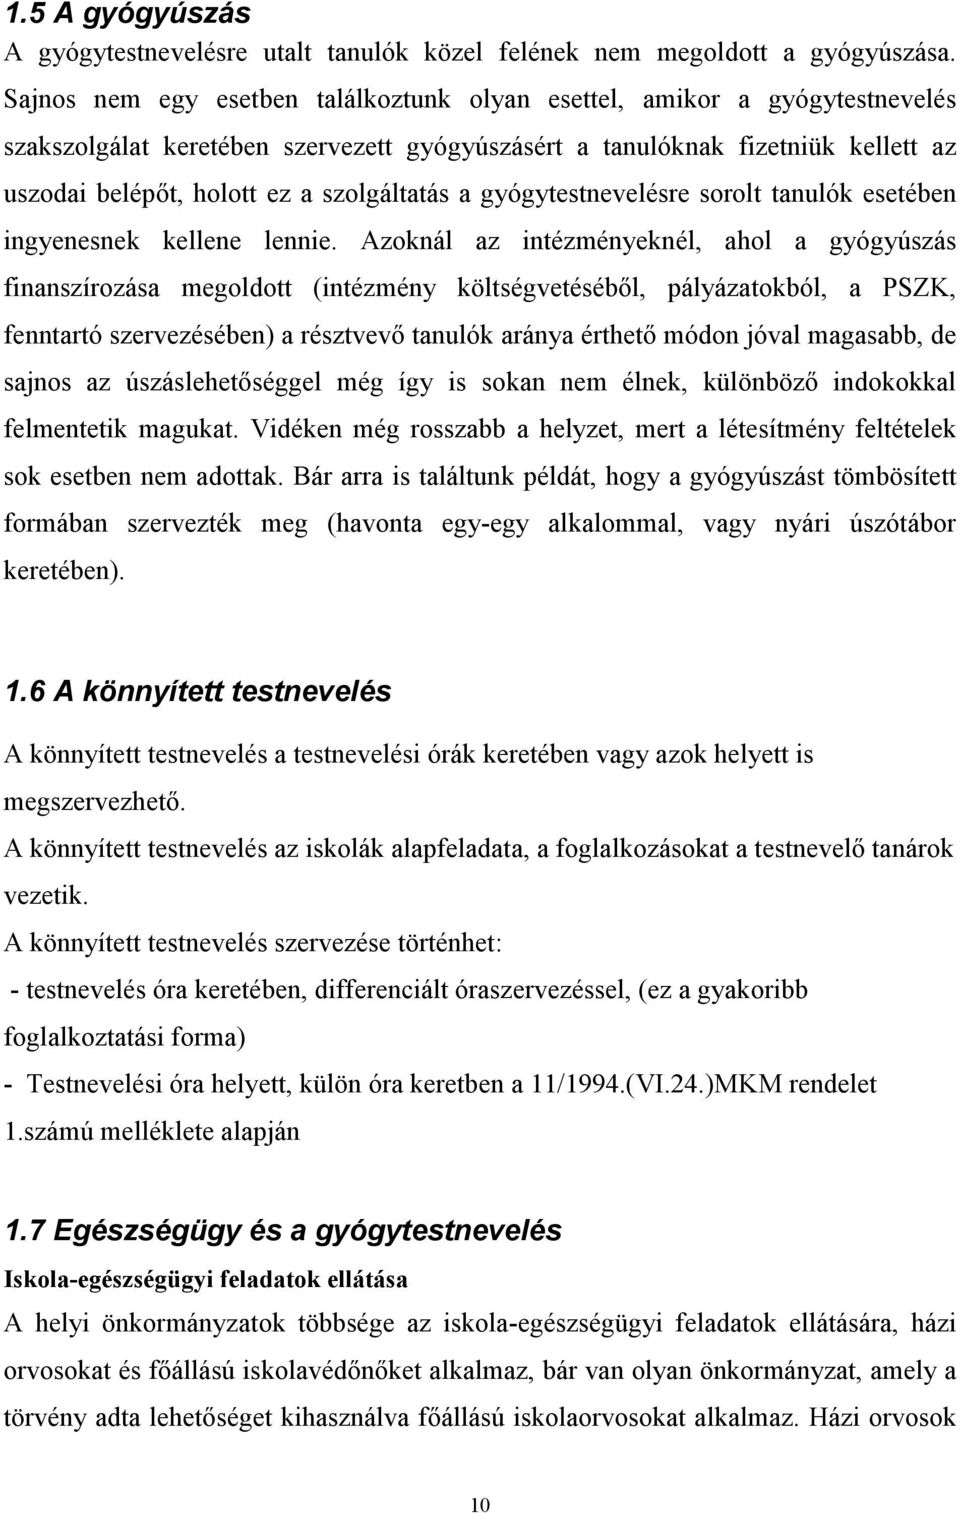 A gyógytestnevelés helyzetelemzése, és fejlesztési terve (2005.) - PDF  Ingyenes letöltés